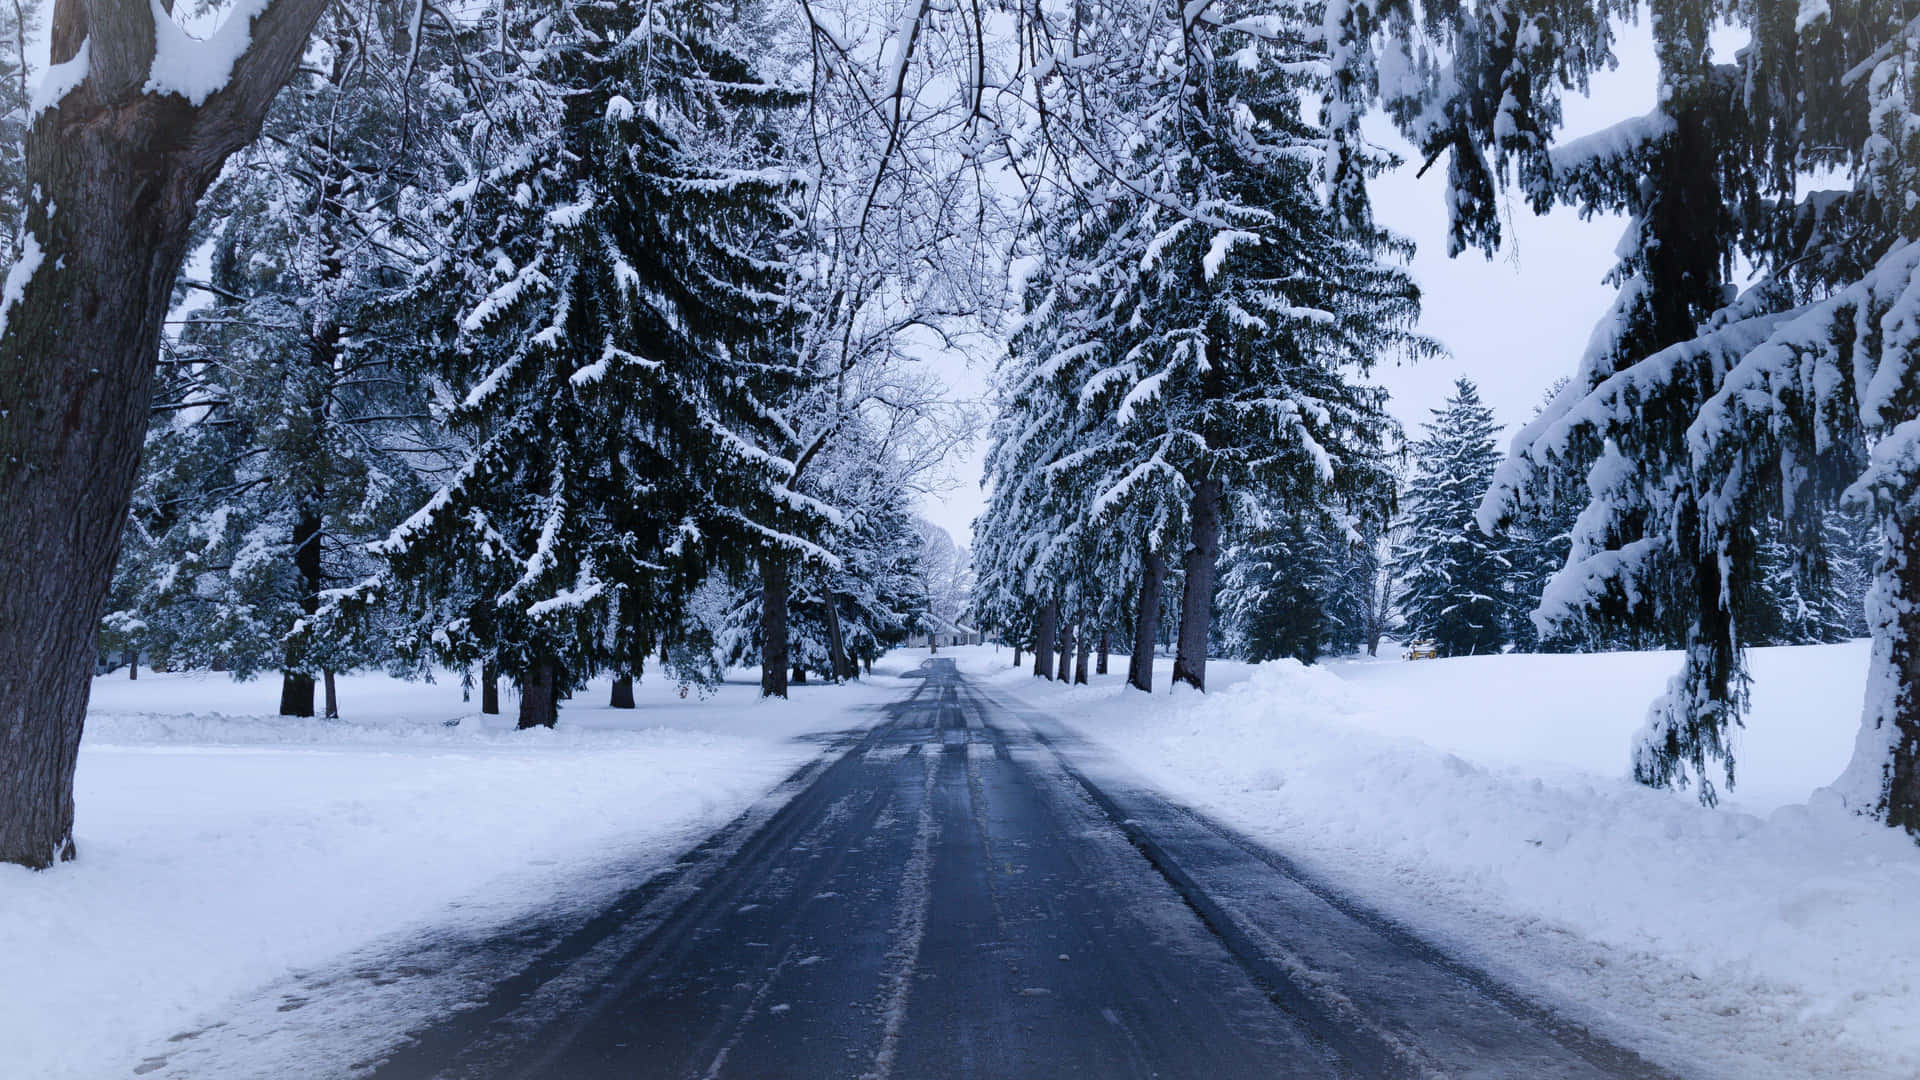 Snowy Road amidst winter landscape Wallpaper